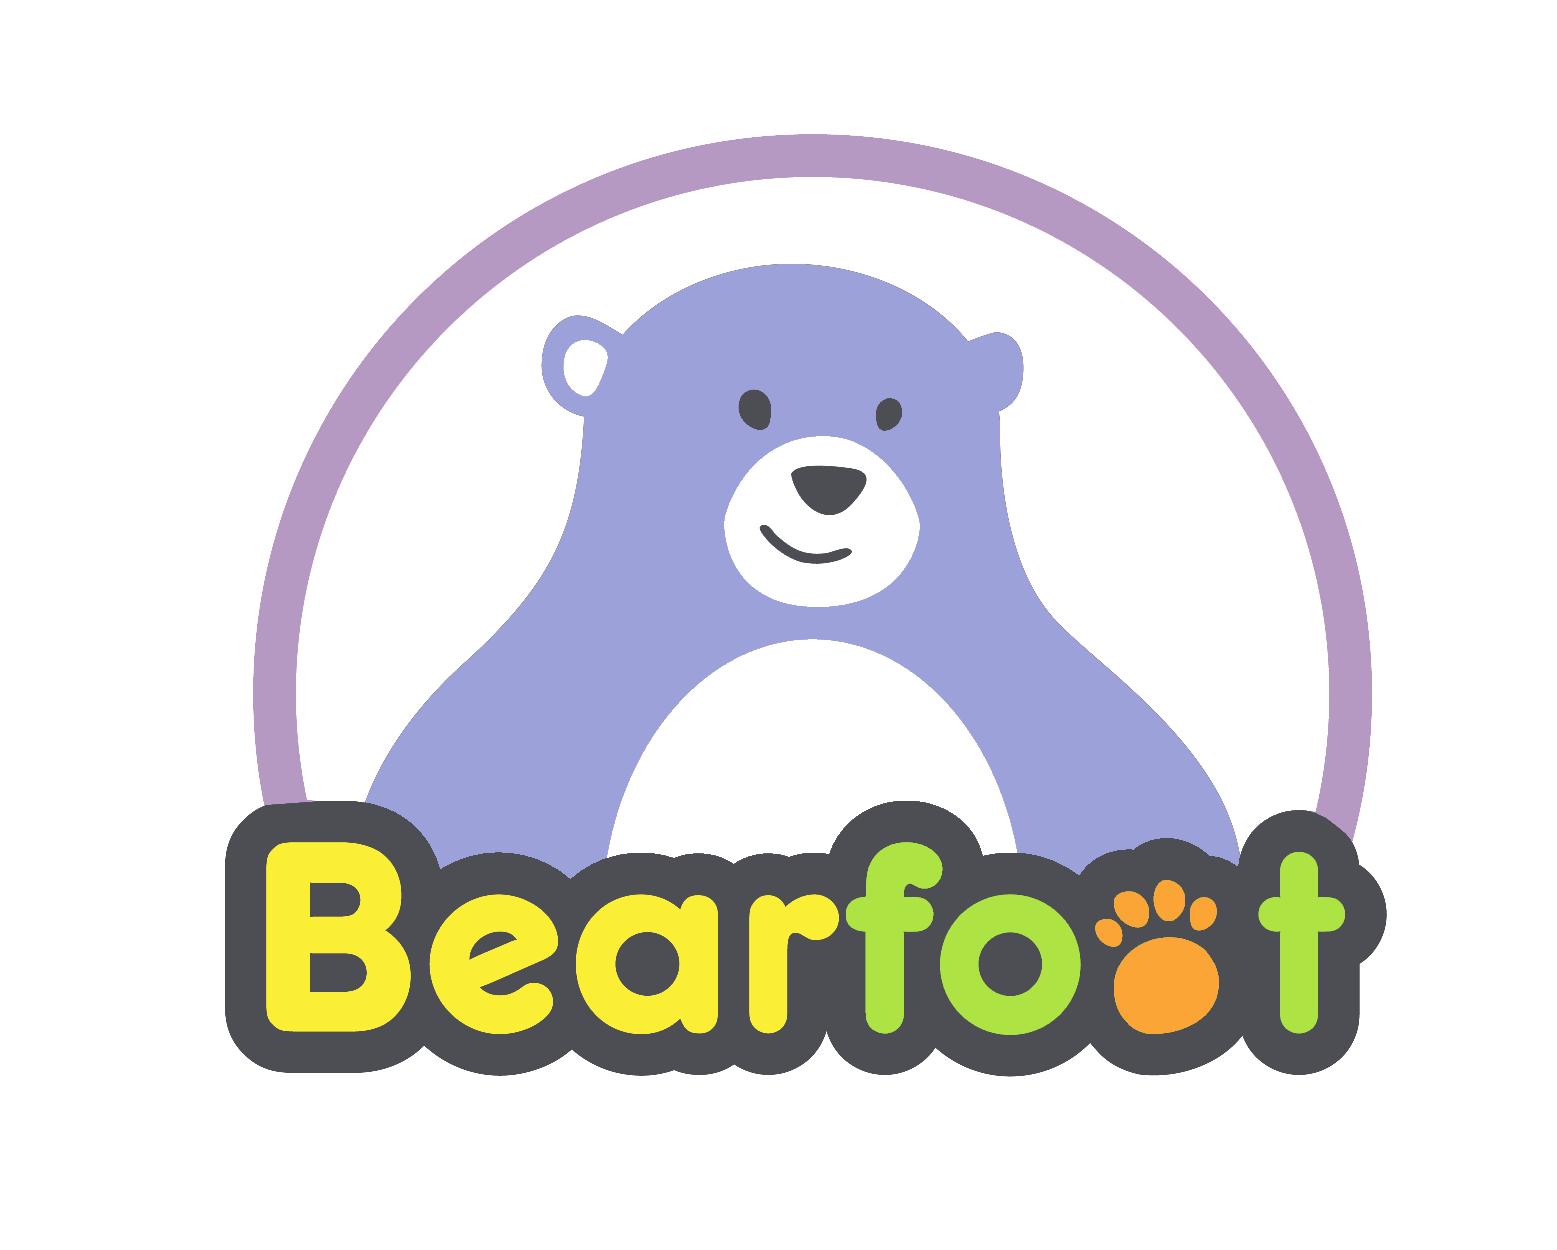 Bearfoot Playground